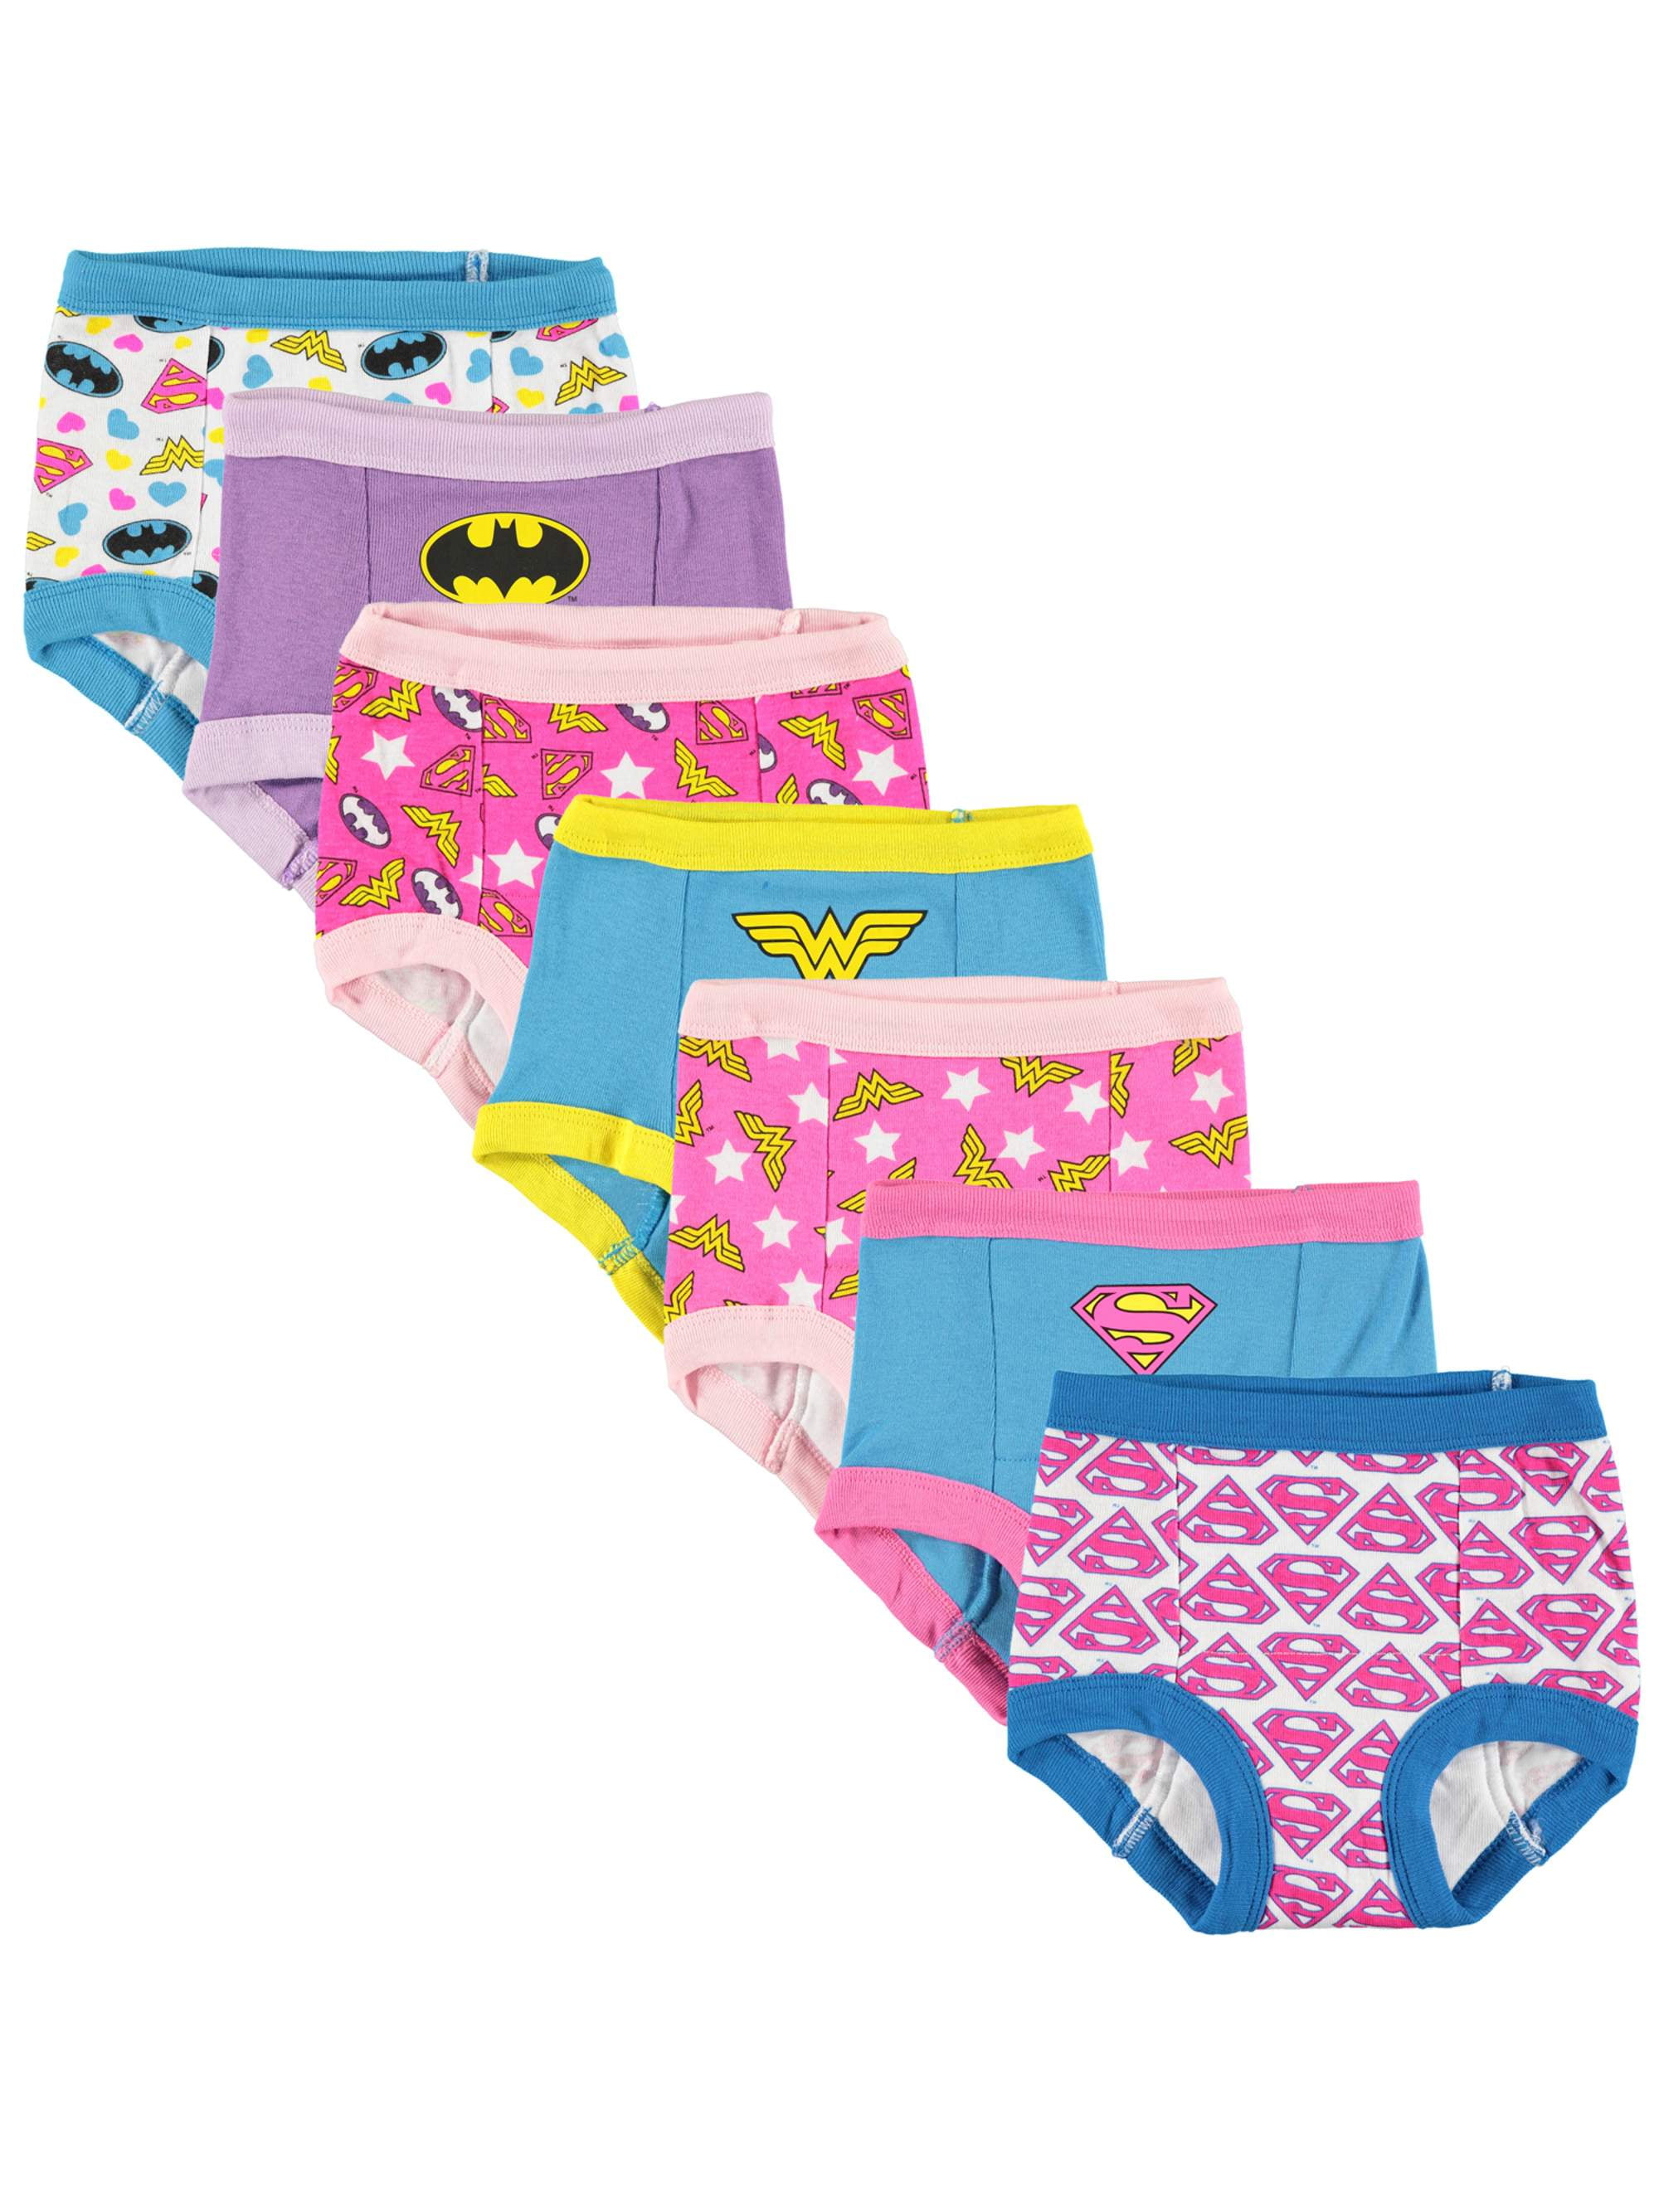 Toddler Girls Training Pants Girls Training Underpants 7 Pack Baby Girls Training Underwear 